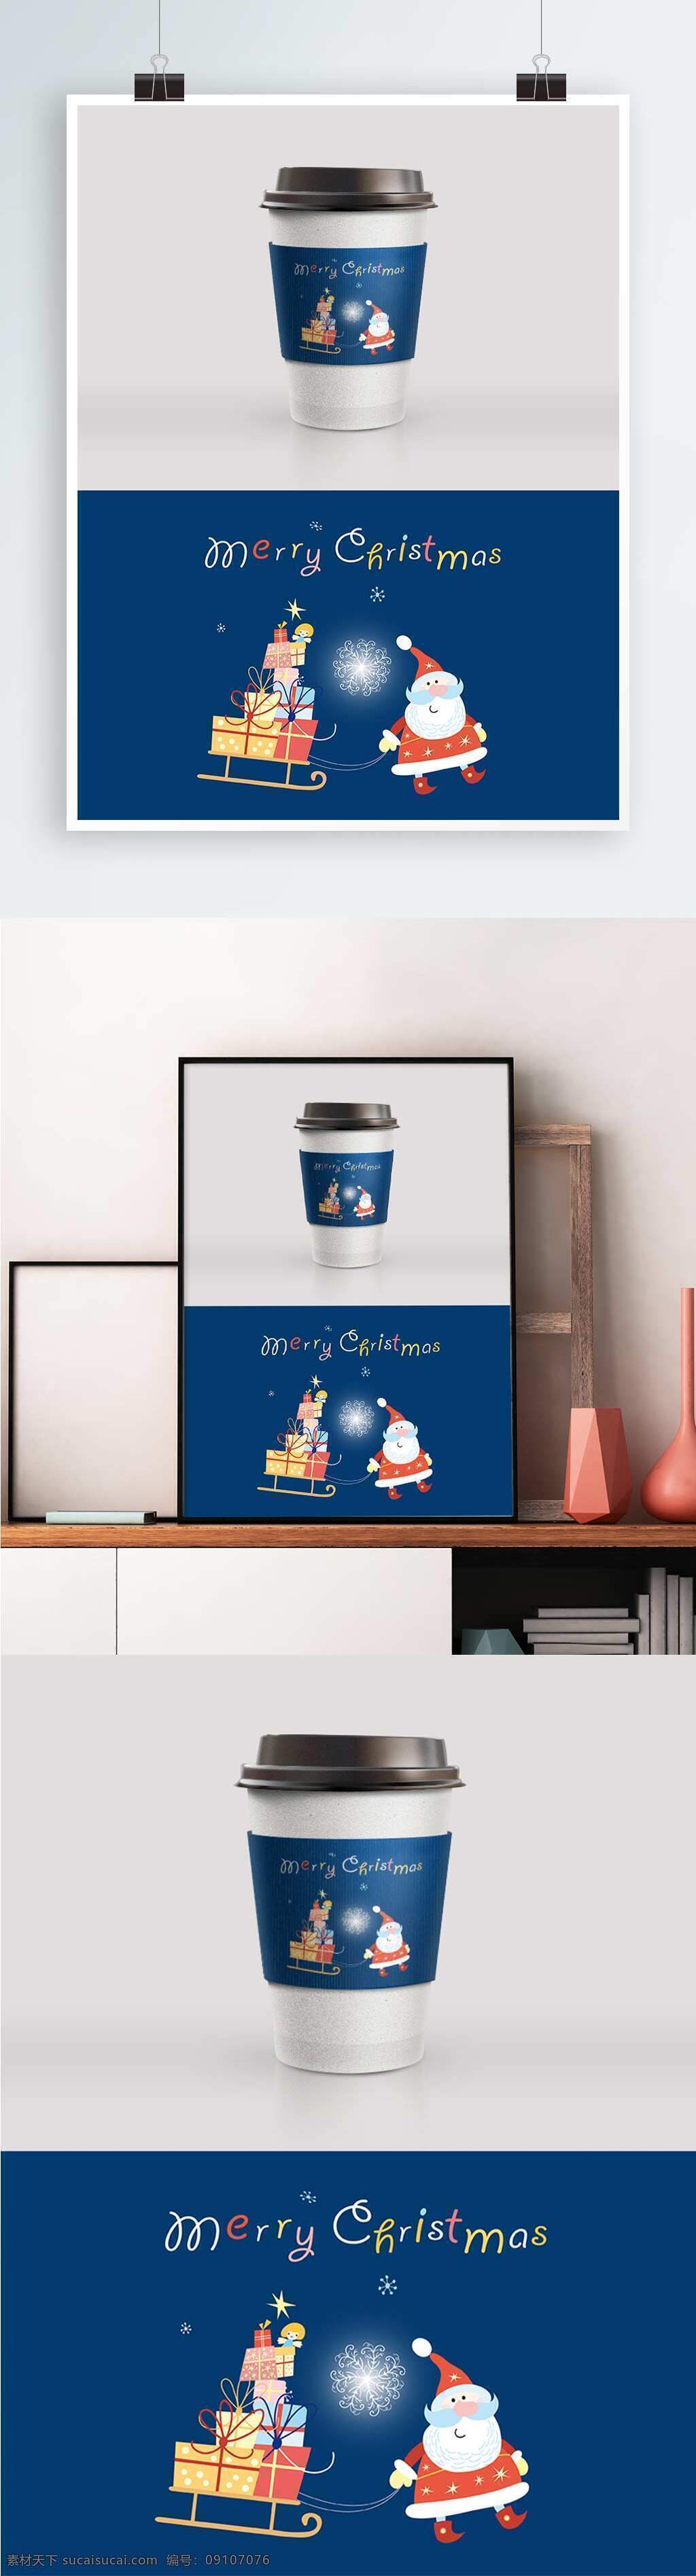 深蓝色 圣诞 主题 包装设计 杯 套 杯套 杯套设计 精美包装 纸杯图案